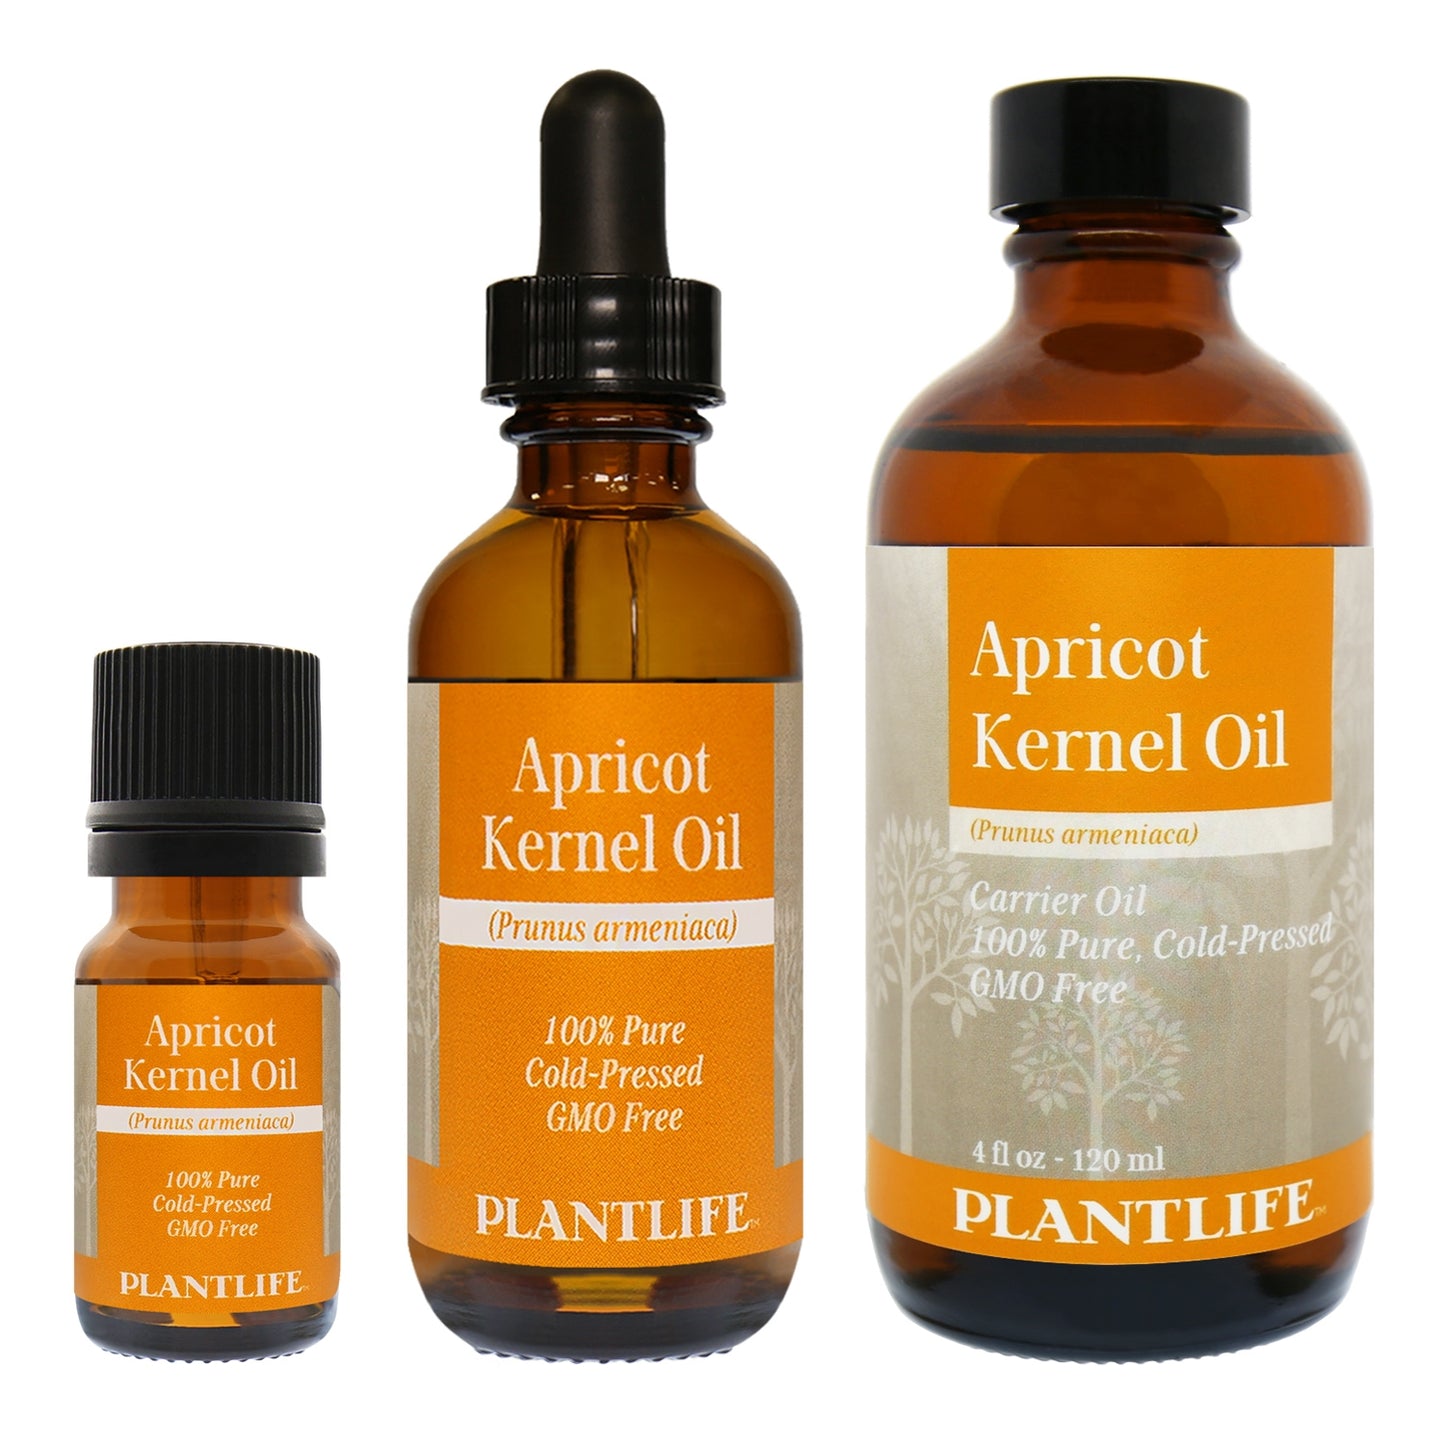 Plantlife Apricot Kernel Oil, 100% Pure, Cold-Pressed - 4 fl oz